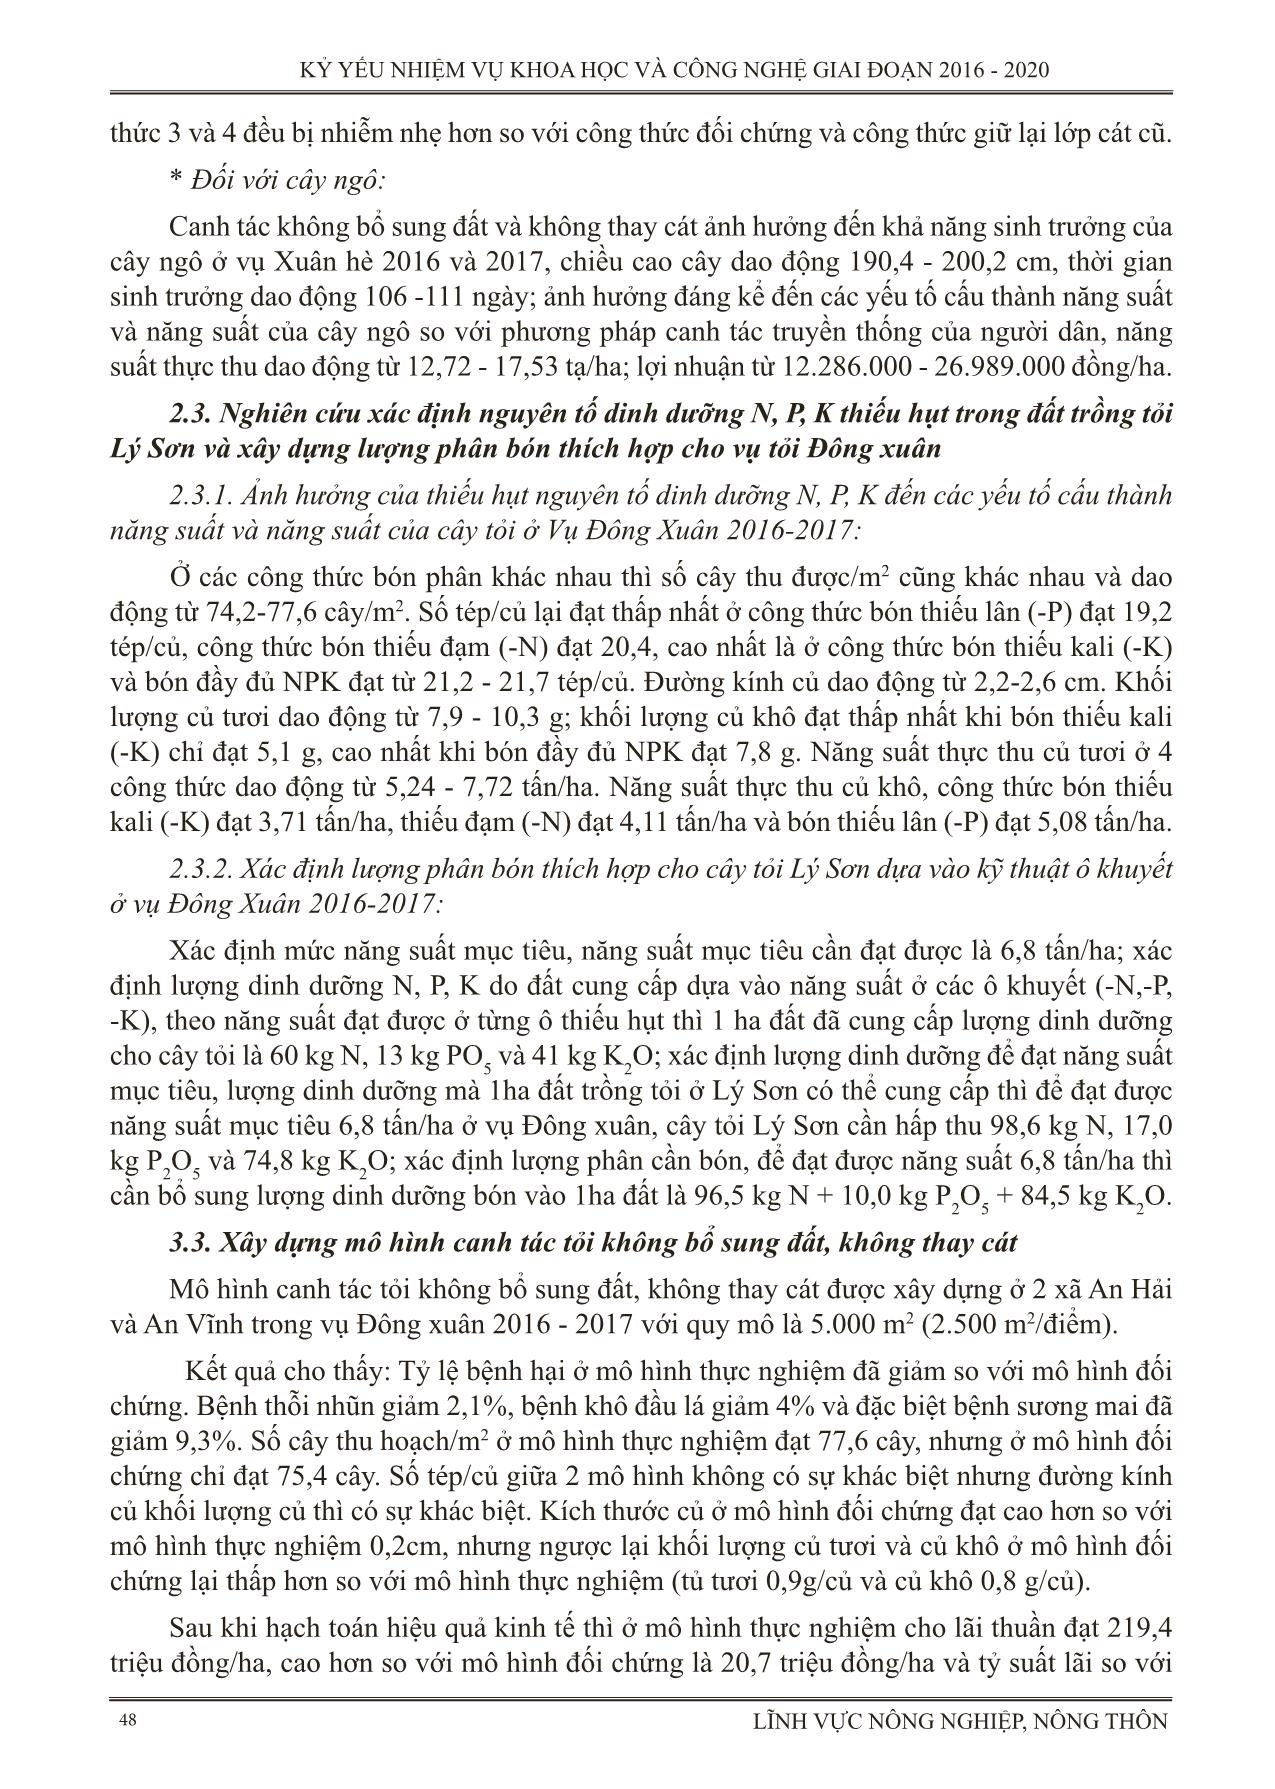 Thực nghiệm các giải pháp kỹ thuật trong canh tác tỏi ở huyện đảo Lý Sơn tỉnh Quảng Ngãi (Canh tác tỏi không bổ sung đất, không thay cát) trang 6